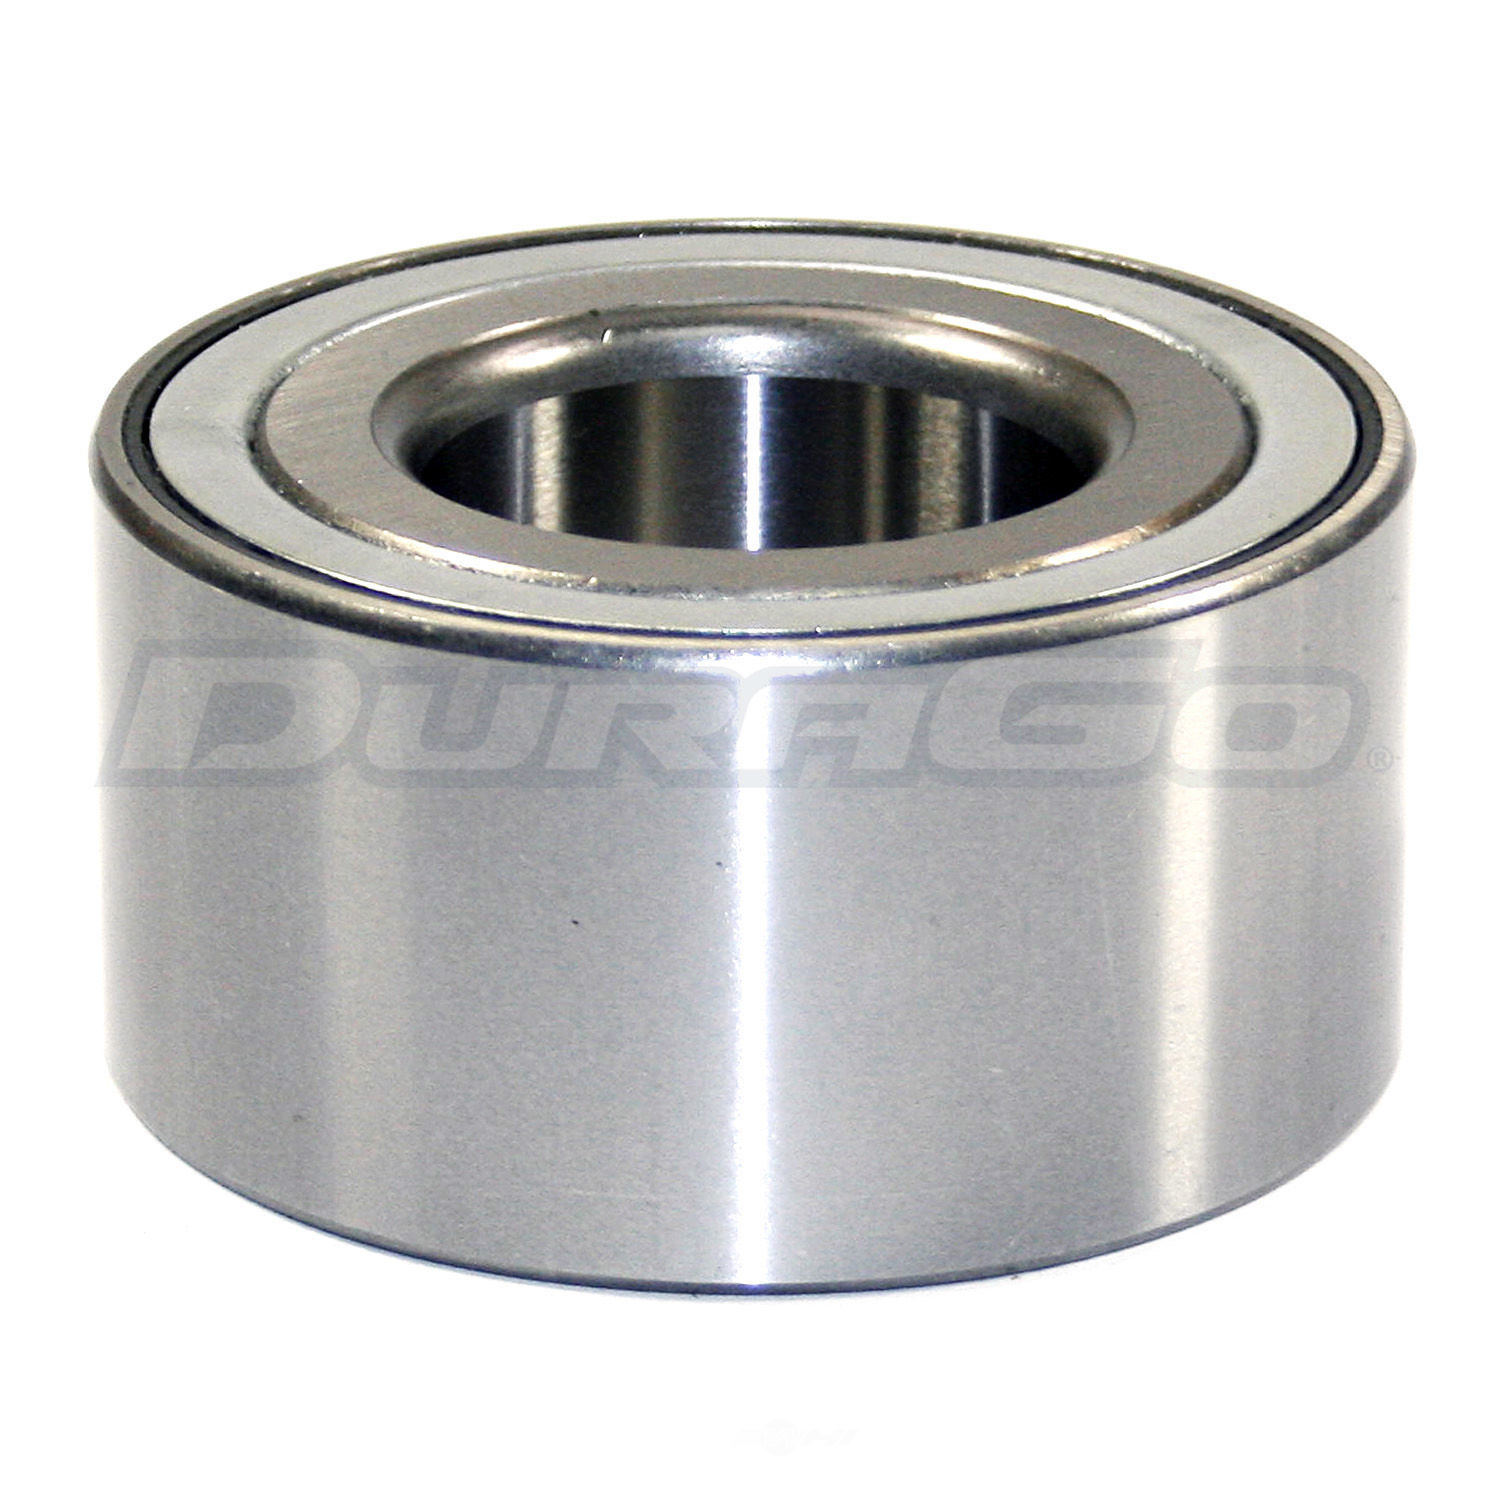 DURAGO - Wheel Bearing - D48 295-10079